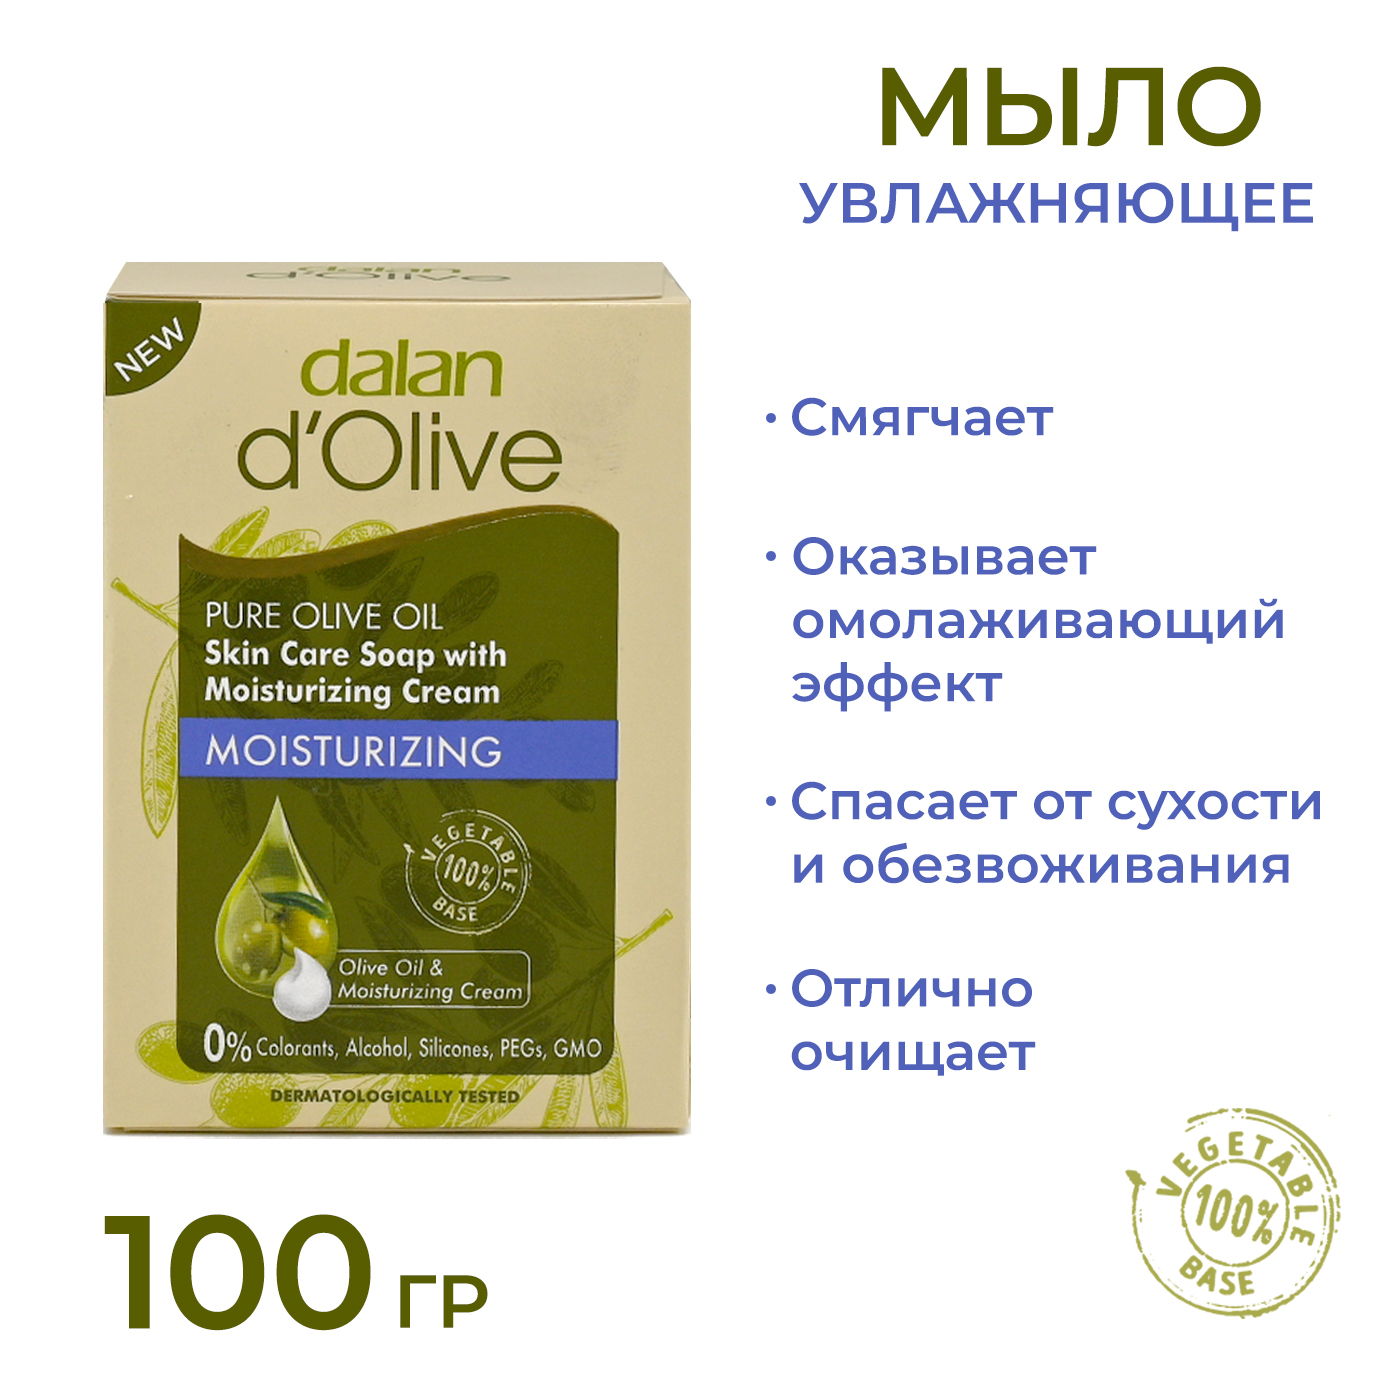 Мыло кусковое Dalan d'Olive Увлажняющее с кремом, 100 г мыло кусковое mon platin увлажняющее с ганатом pomegranate 120 г